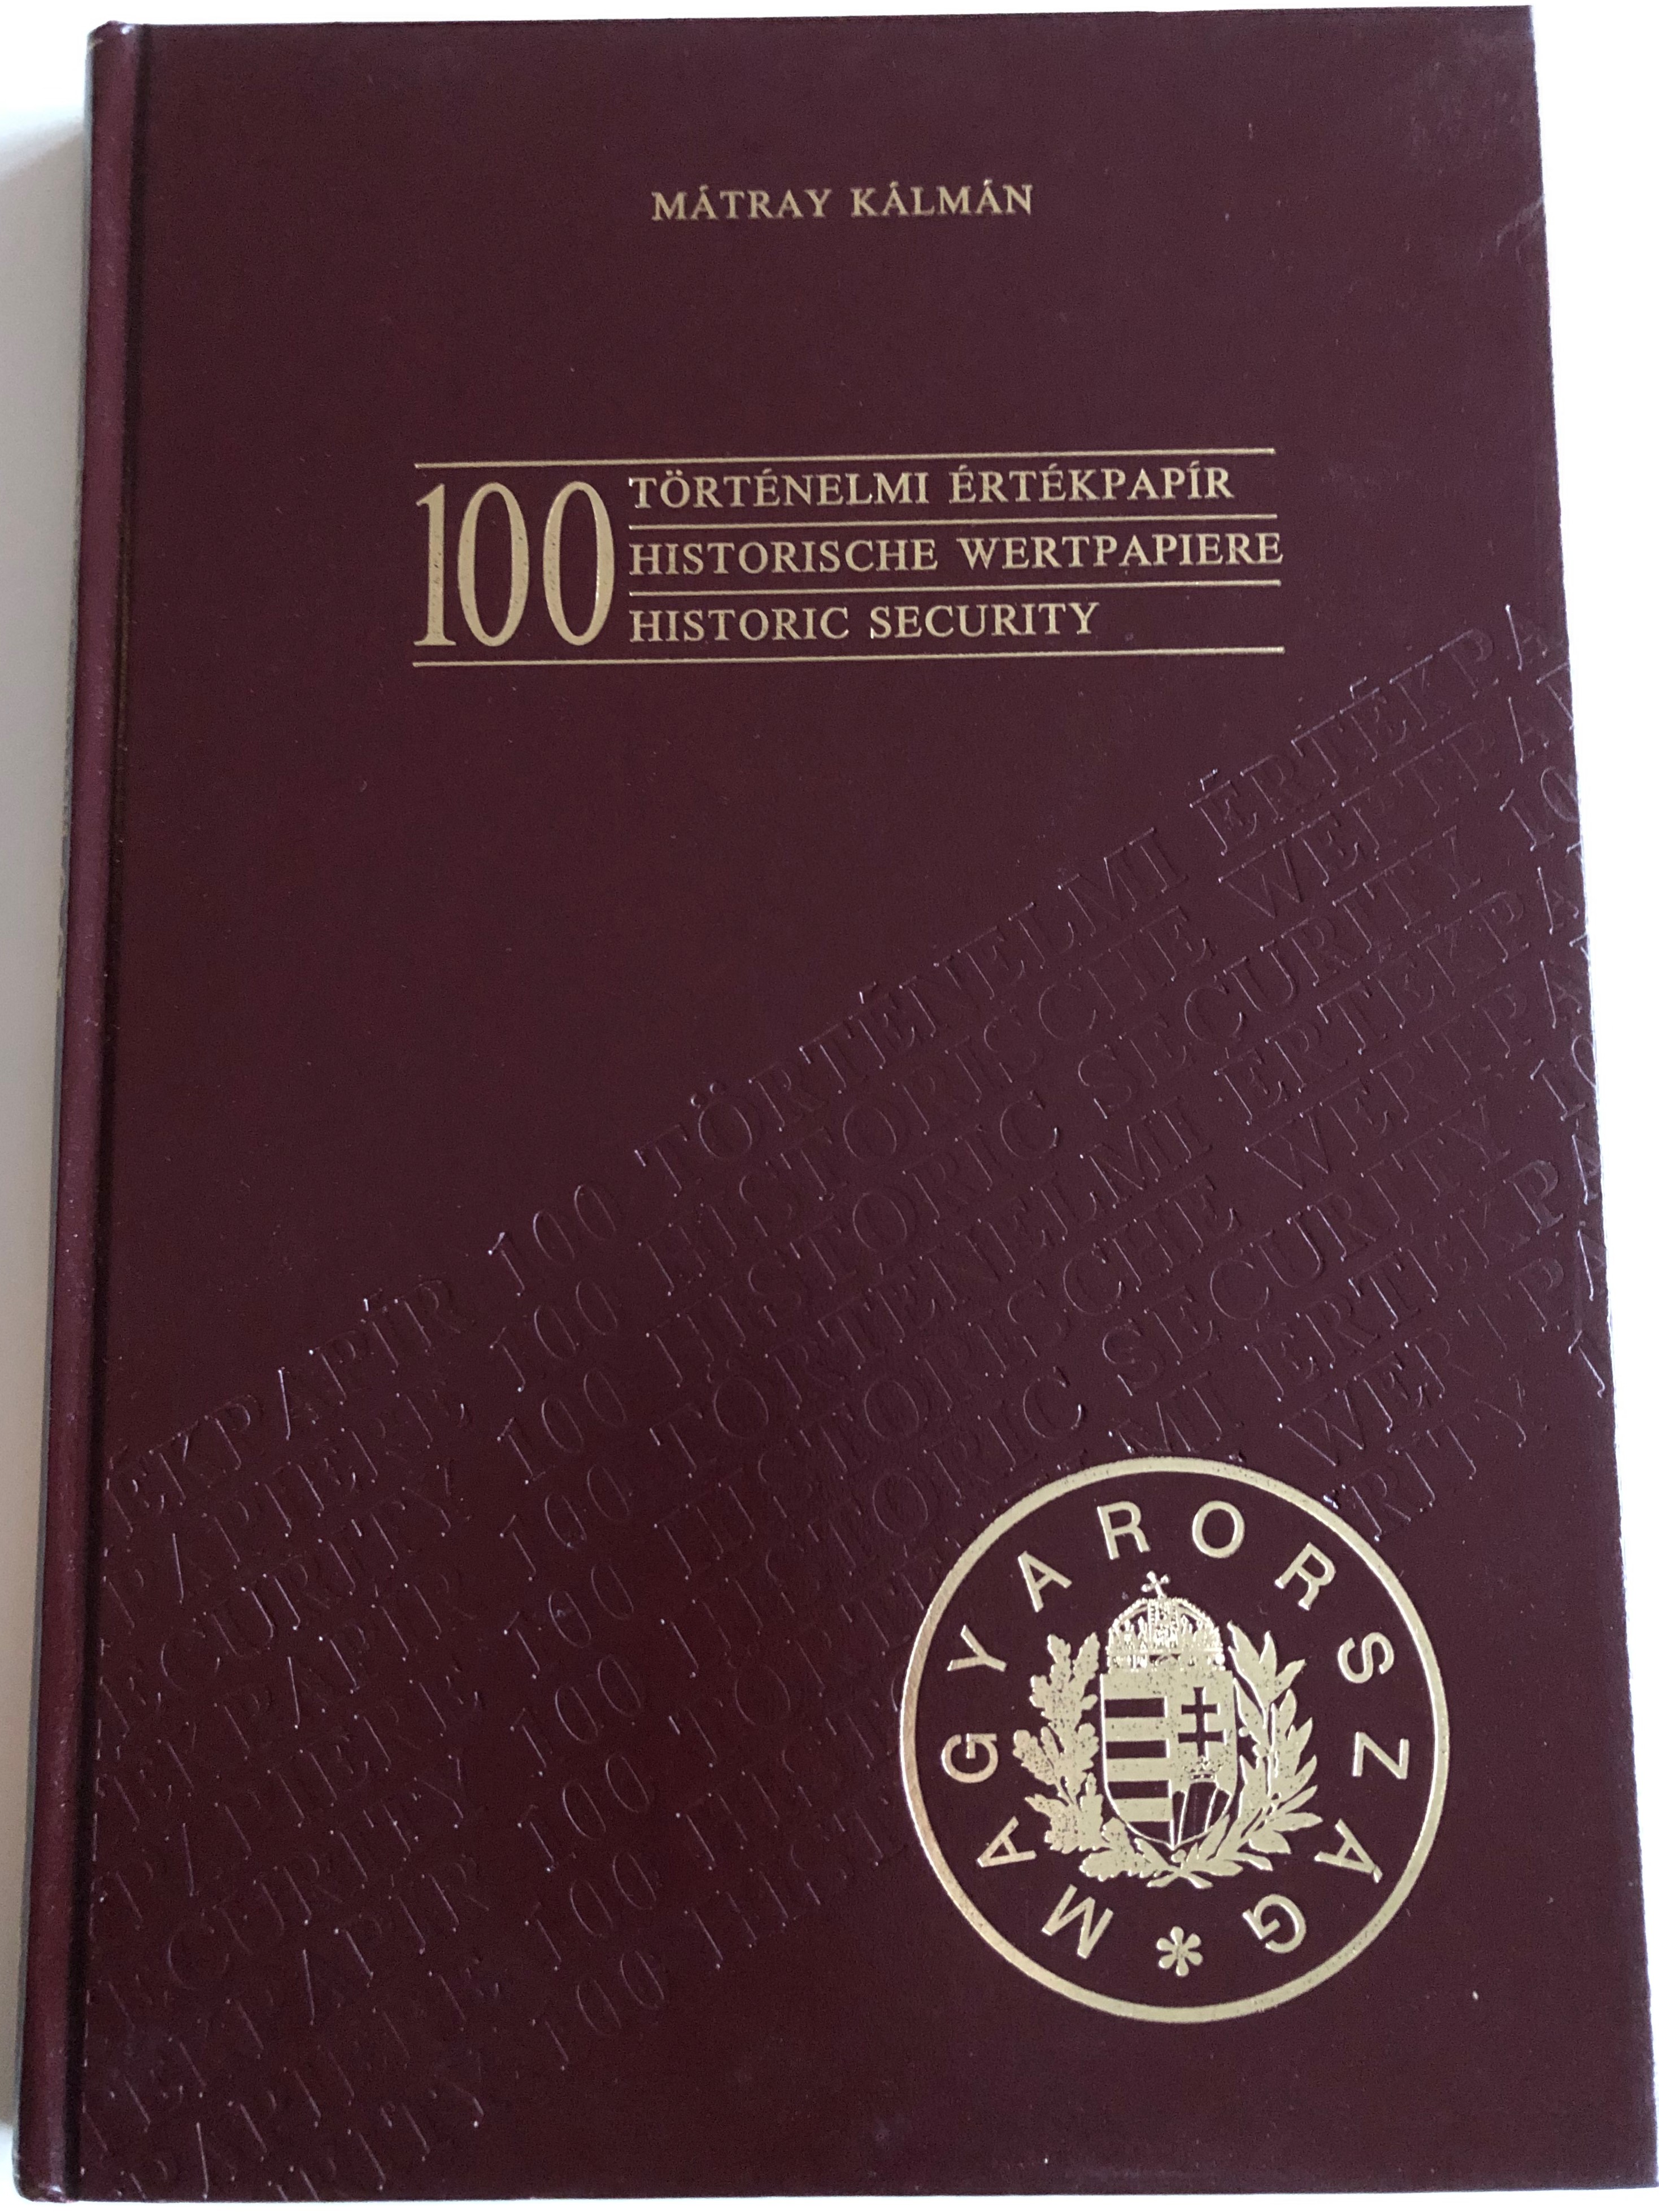 100 Történelmi értékpapír by Mátray Kálmán - 100 Historic Securities  1.JPG